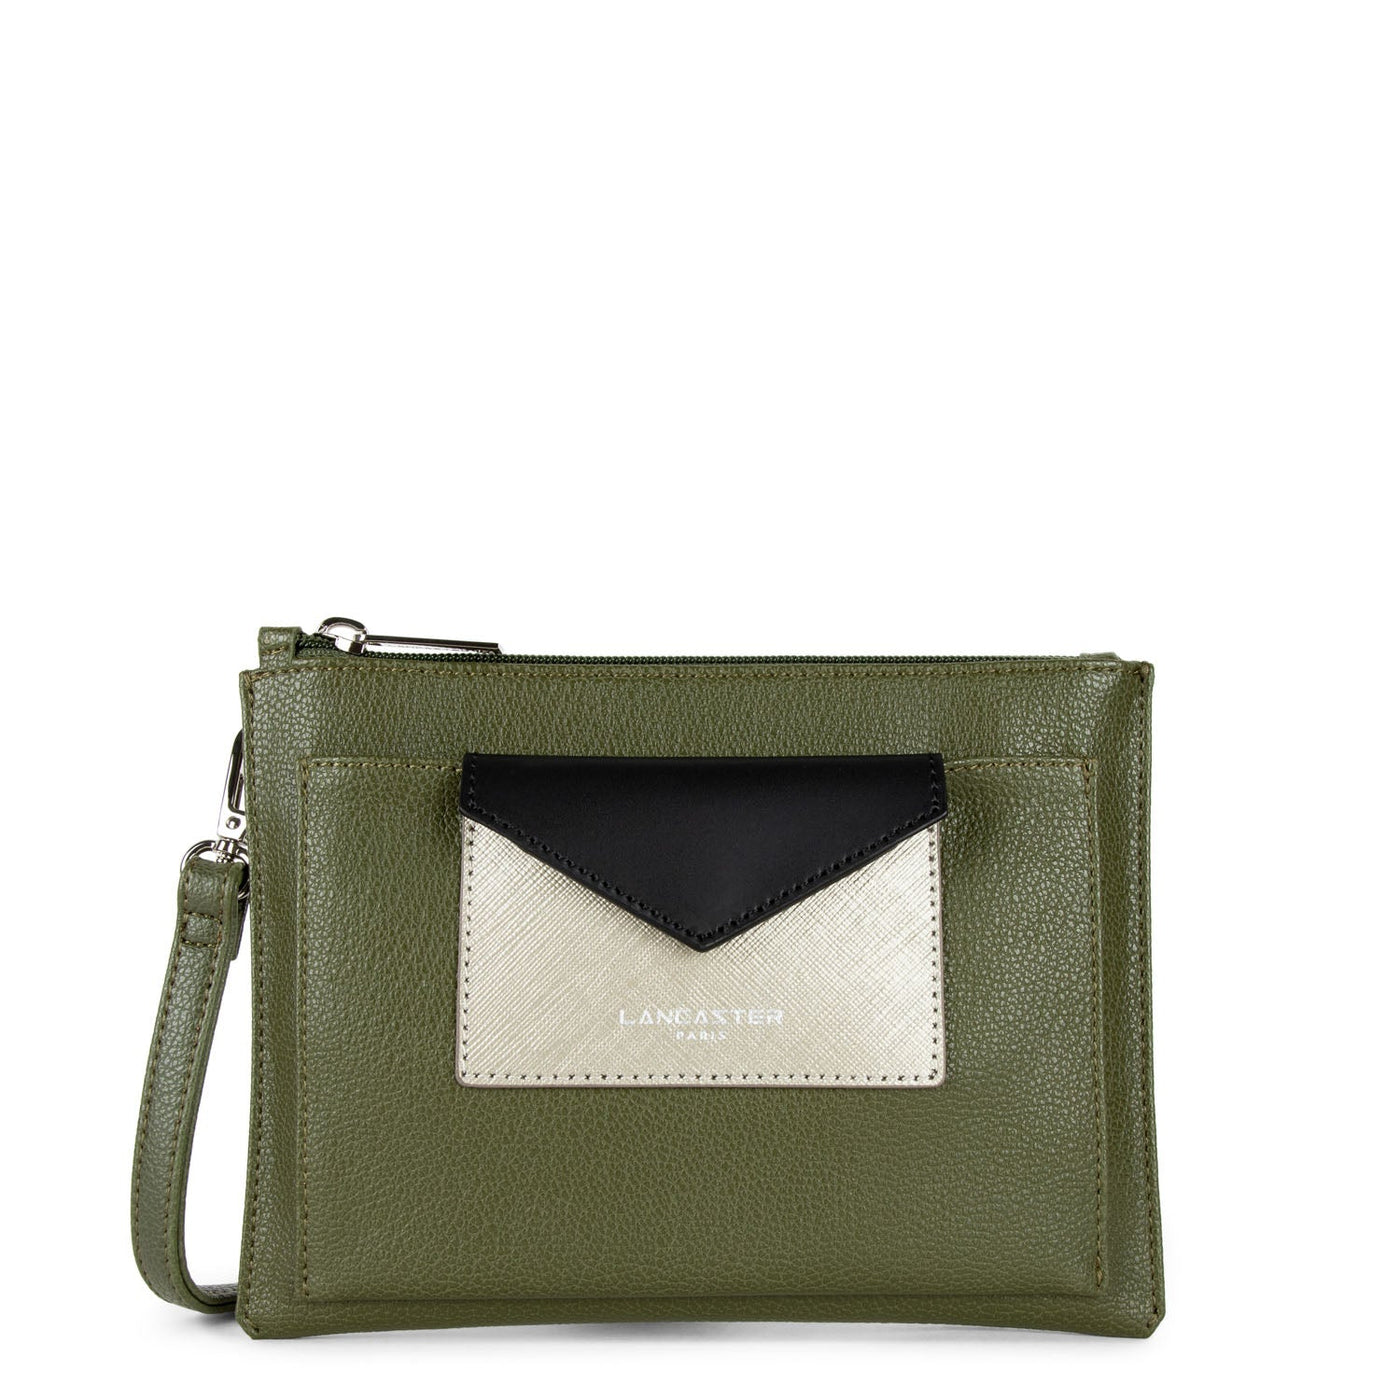 crossbody bag - maya #couleur_vert-militaire-fusil-noir